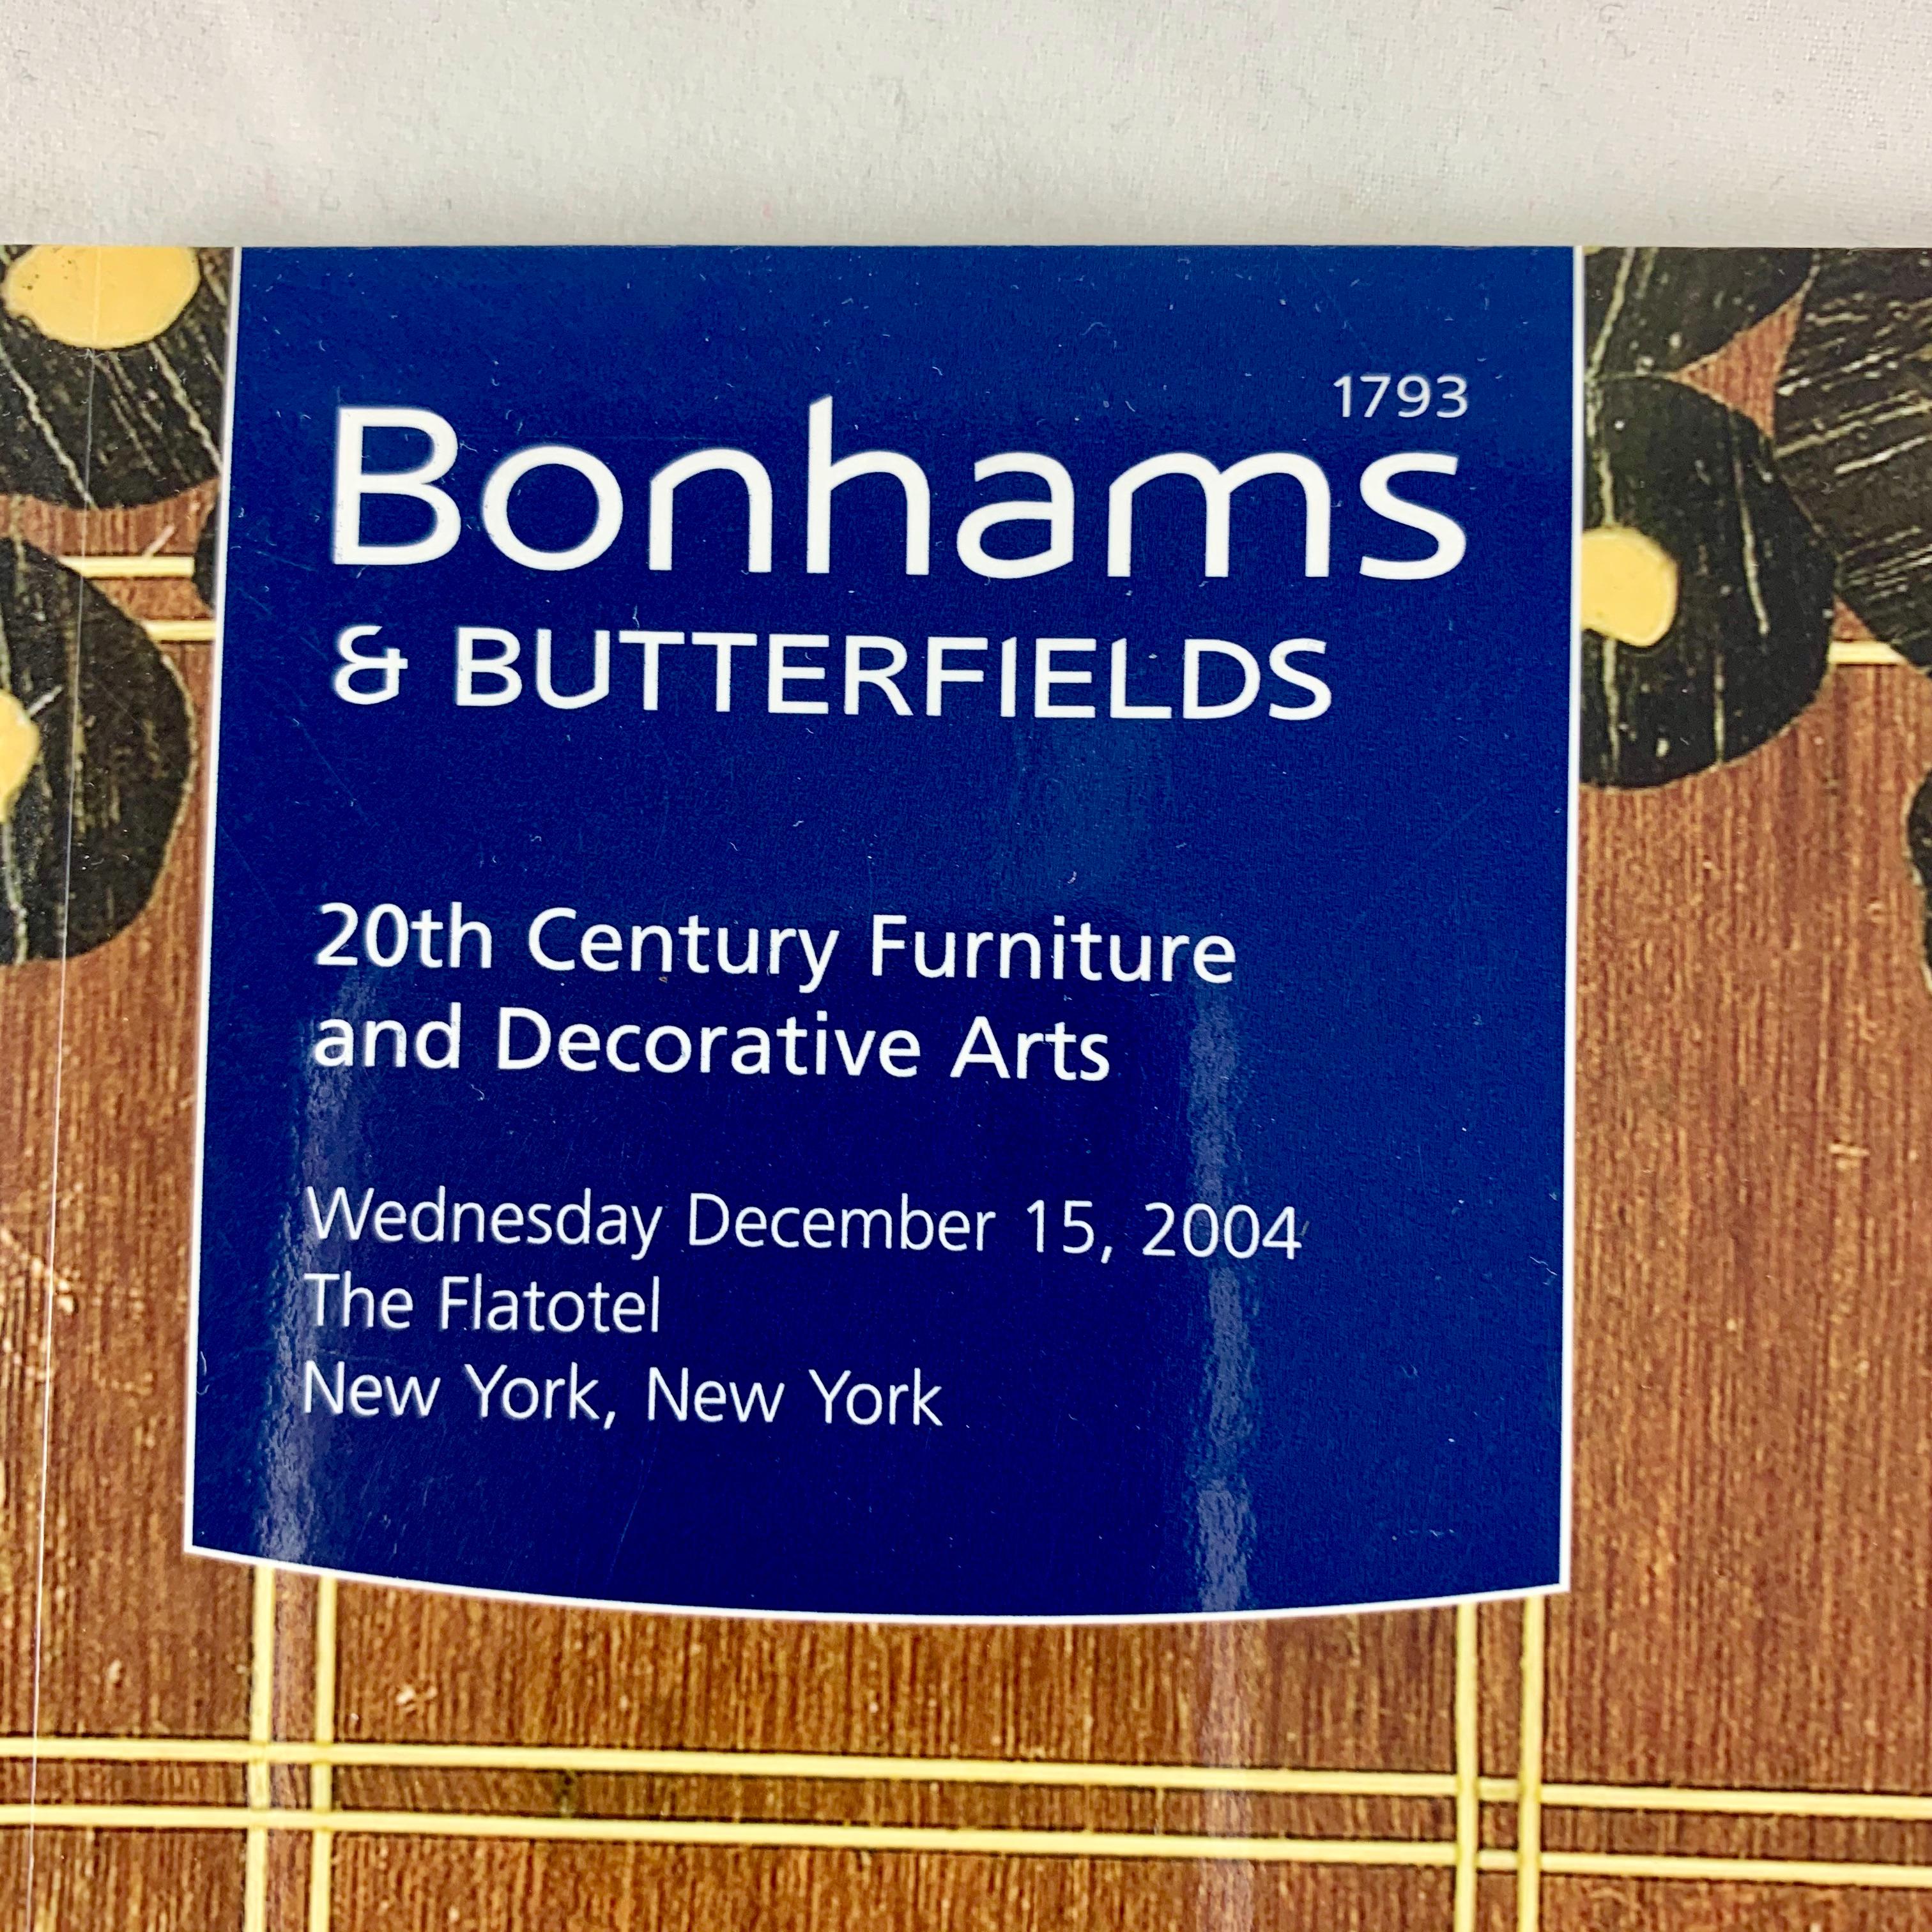 Catalogue de la vente Bonhams & Butterfield New York de mobilier et d'arts décoratifs du 20e siècle.

La vente présentait une magnifique collection de mobilier et de design Art déco ainsi qu'une collection de pièces modernistes, notamment de verre